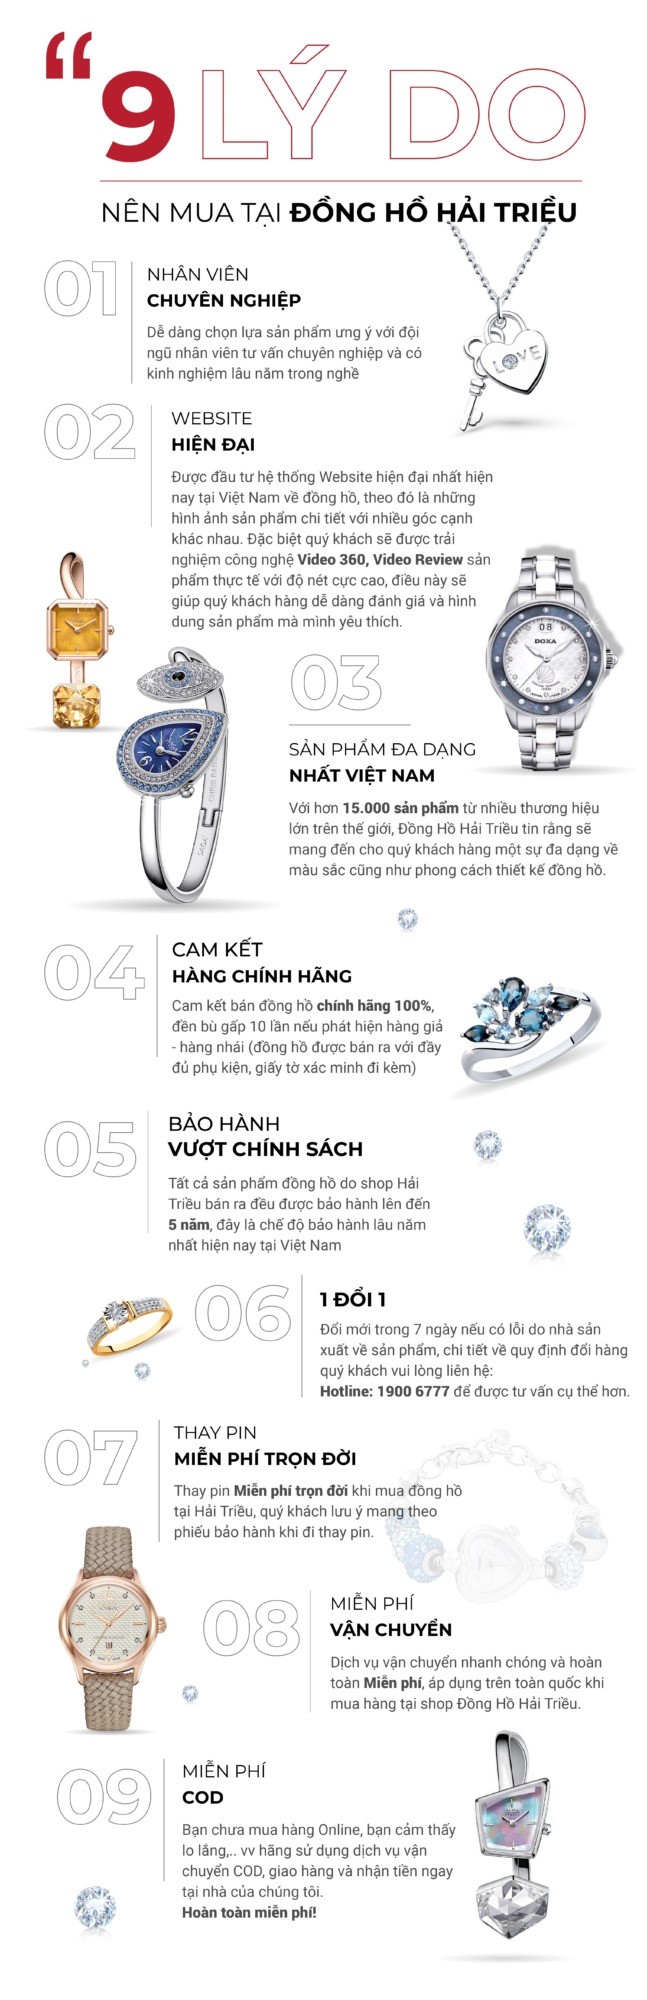 Lý do khách hàng nên chọn mua đồng hồ ở Hải Triều